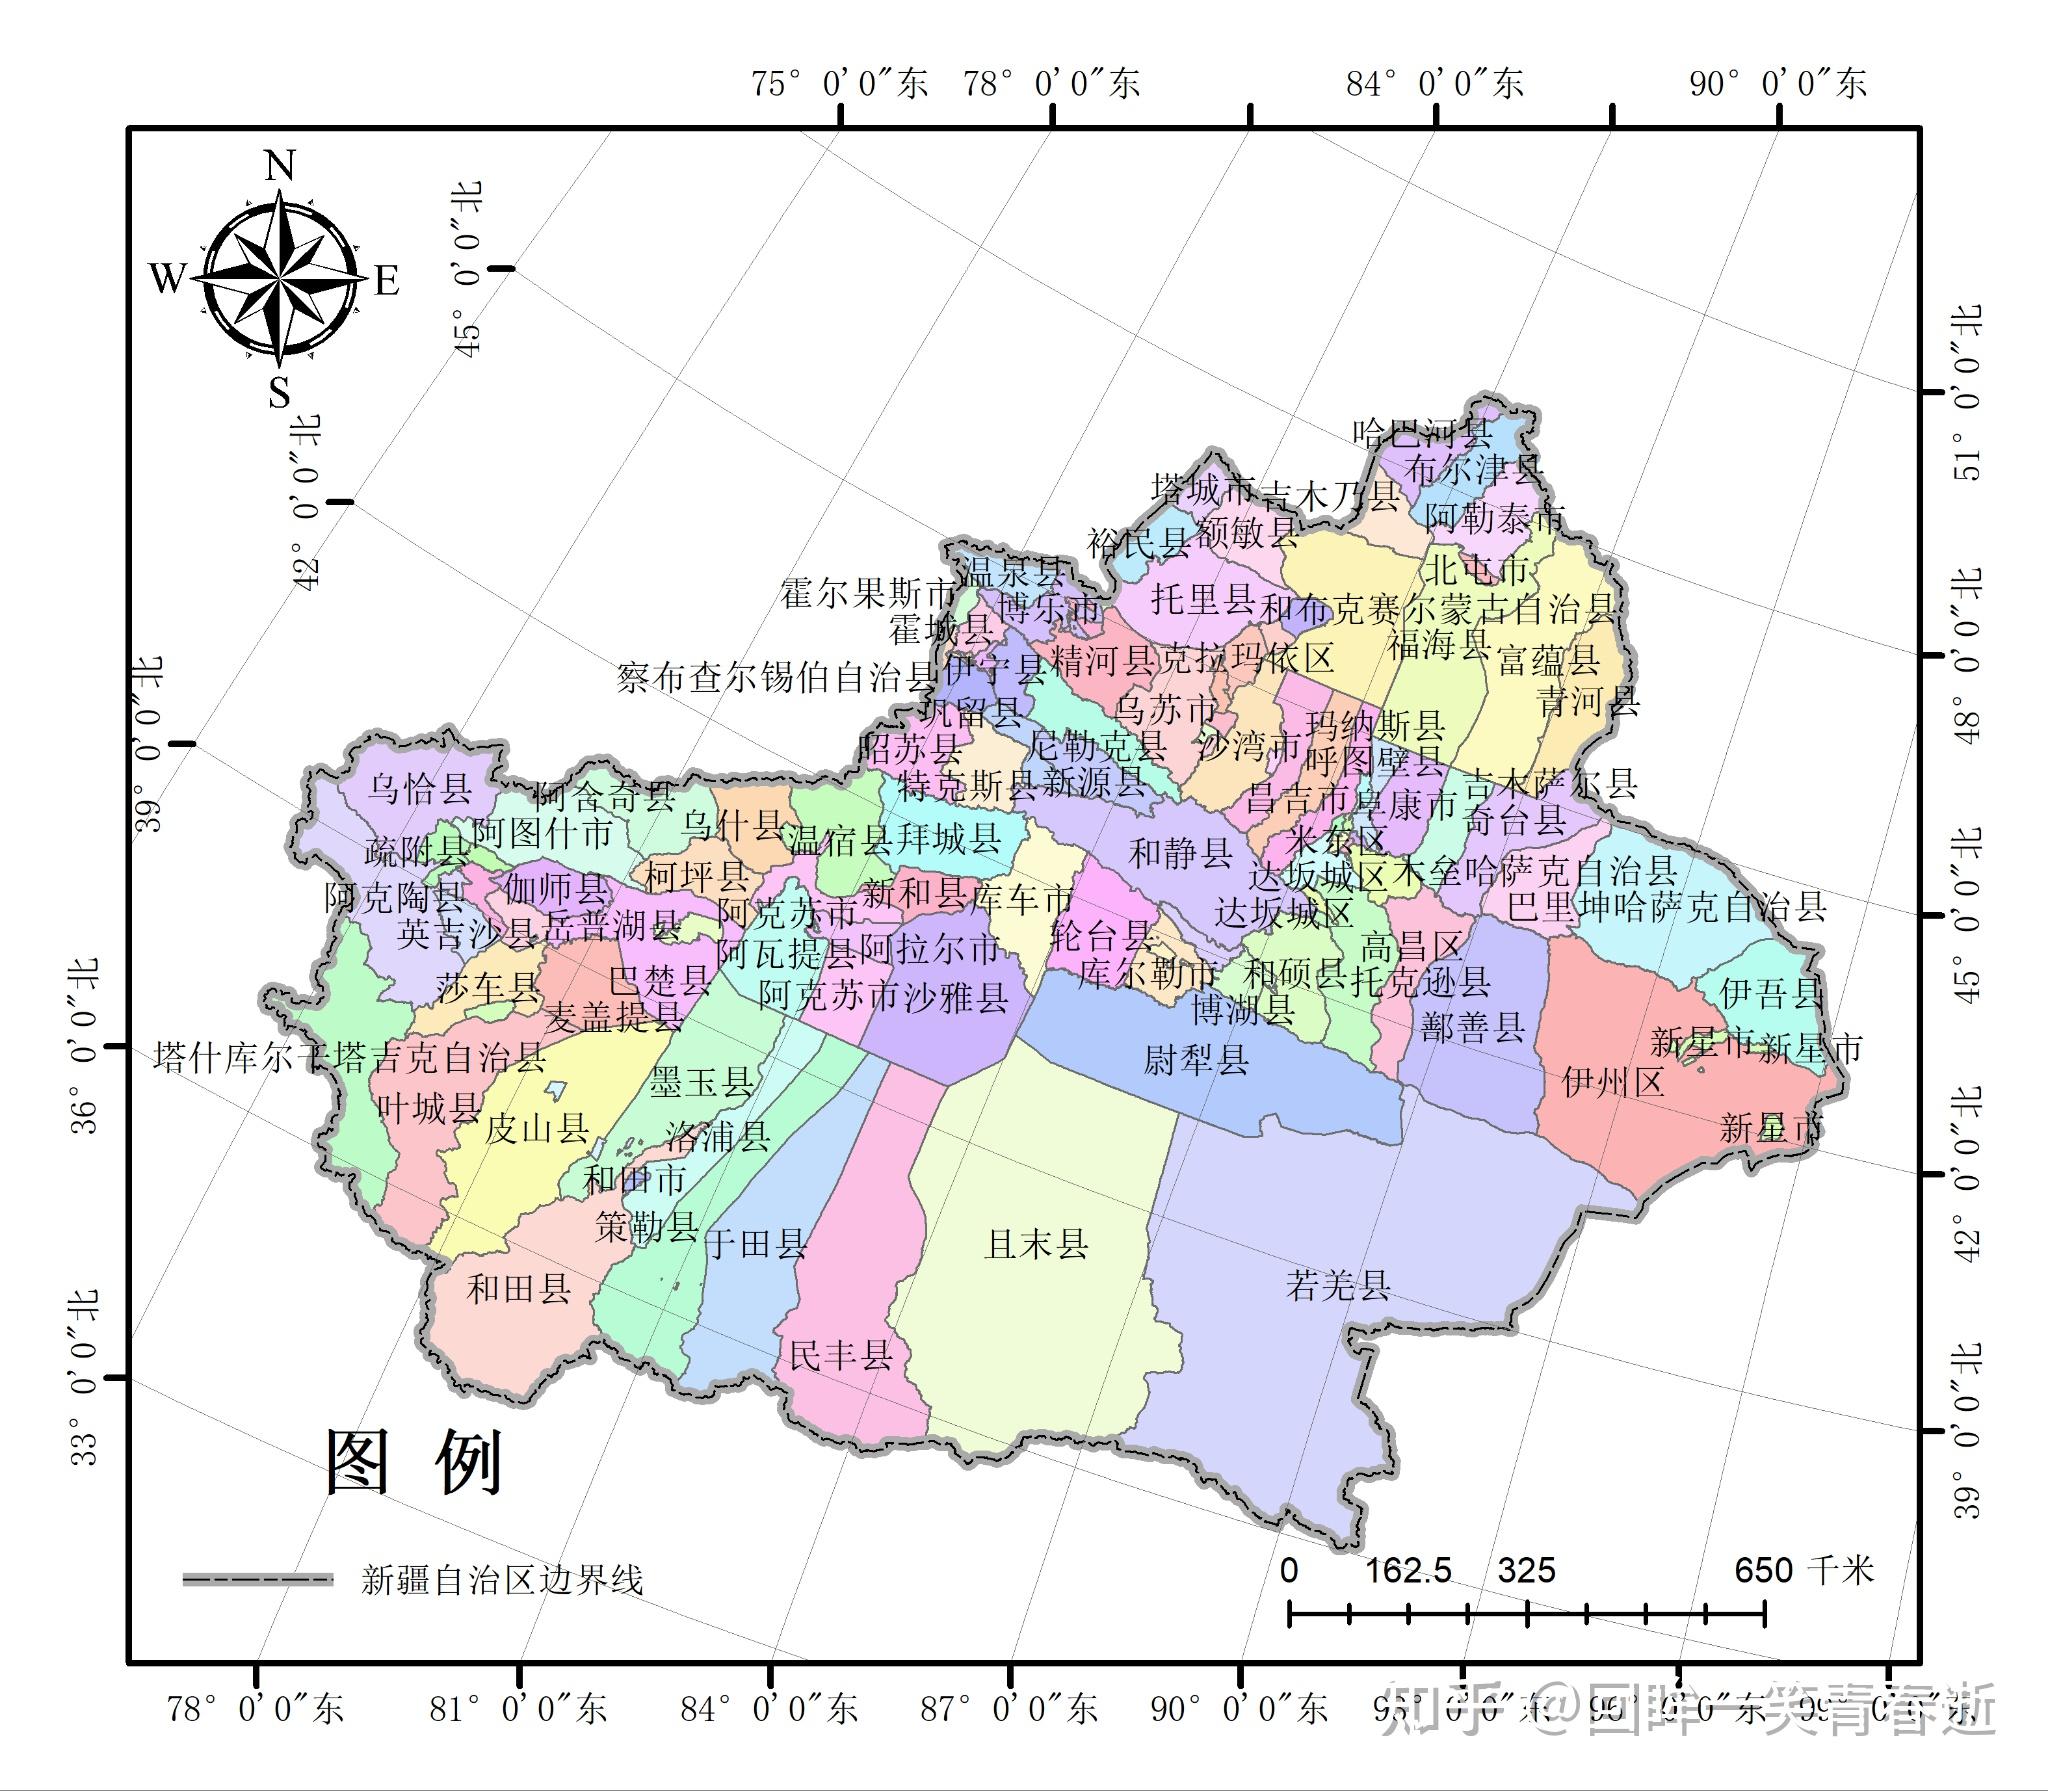 新疆自治区高清卫星地图下载(百度网盘离线包下载)-卫星影像-高清卫星地图下载器_离线地图发布_水经微图地图下载器-水经注GIS